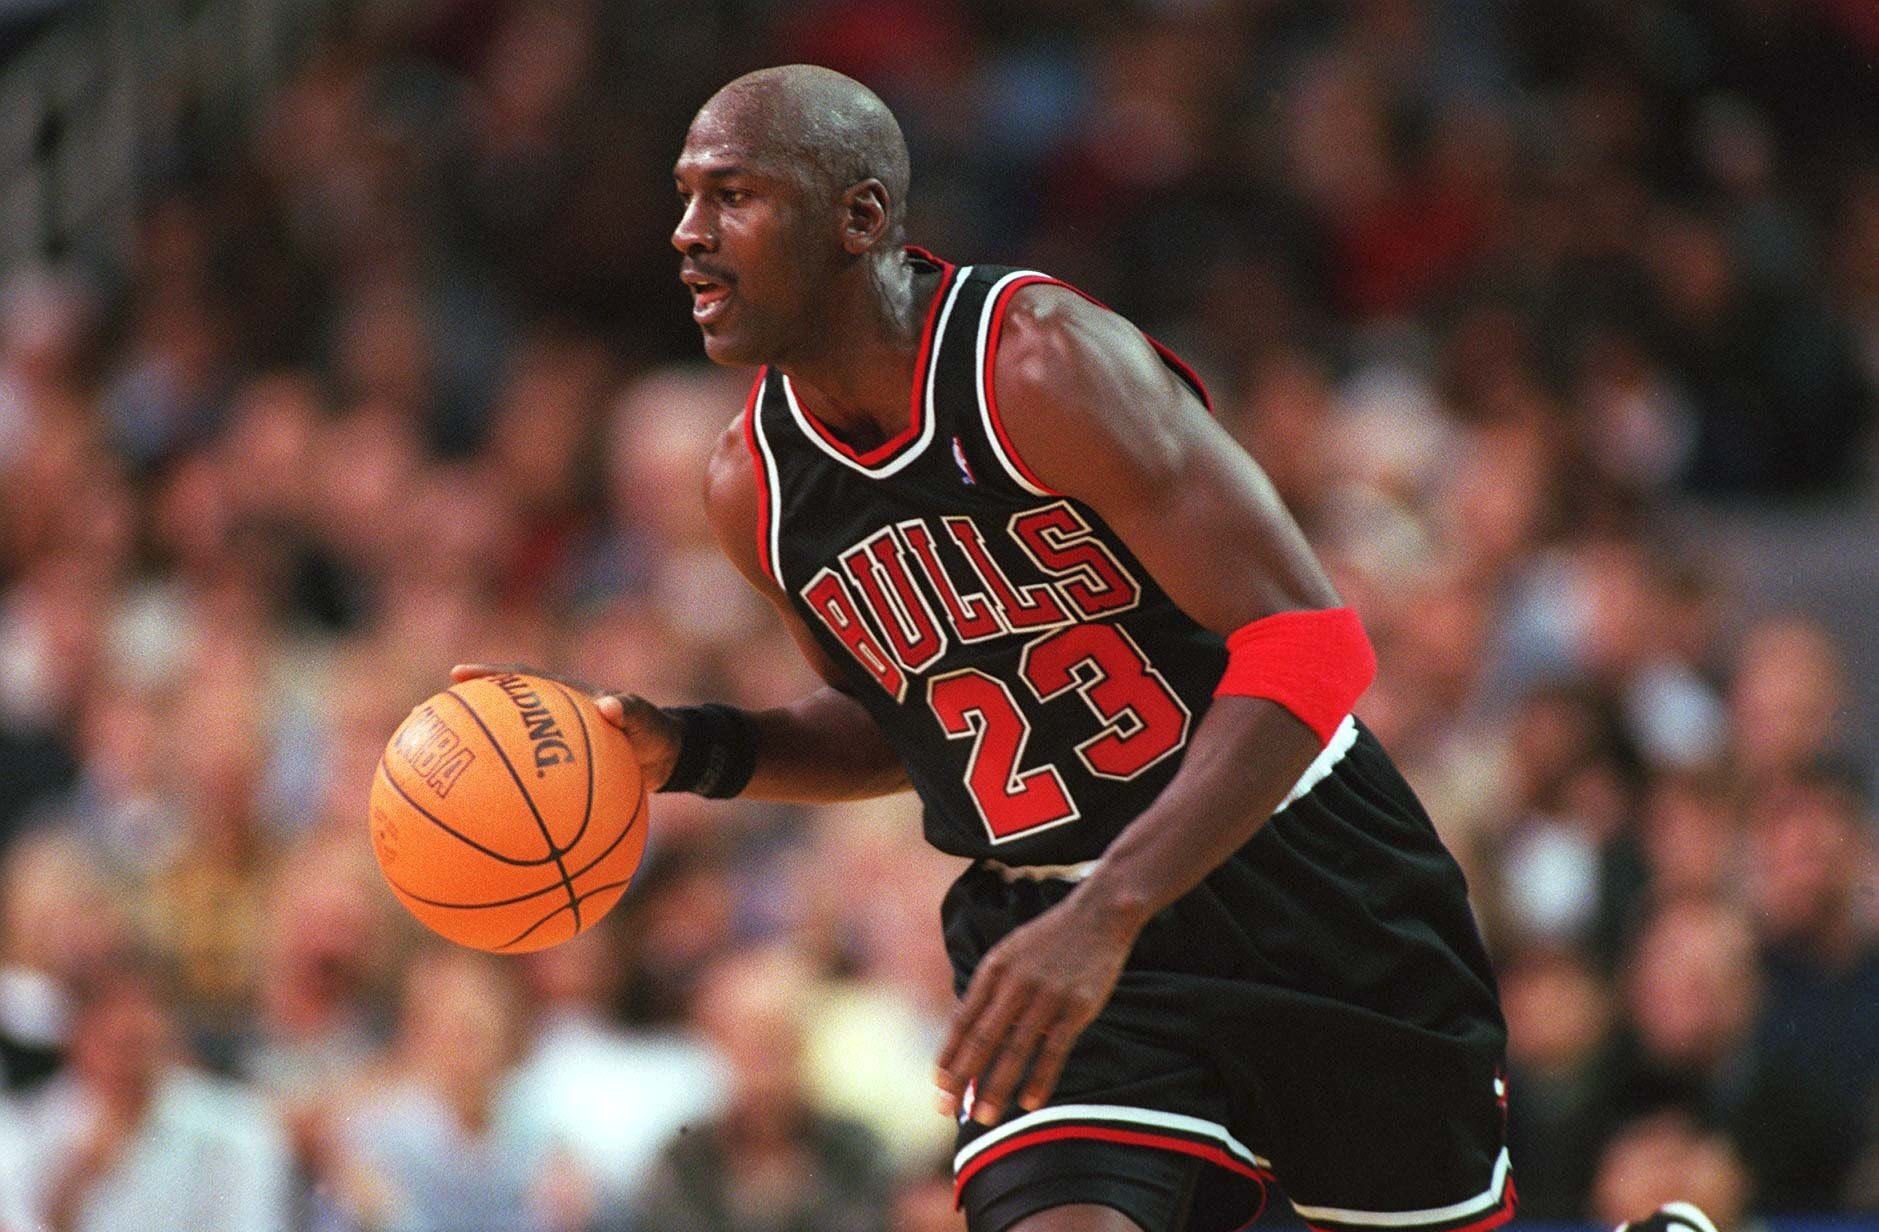 NBArank Best NBA Finals Games: Michael Jordan's flu game - ESPN